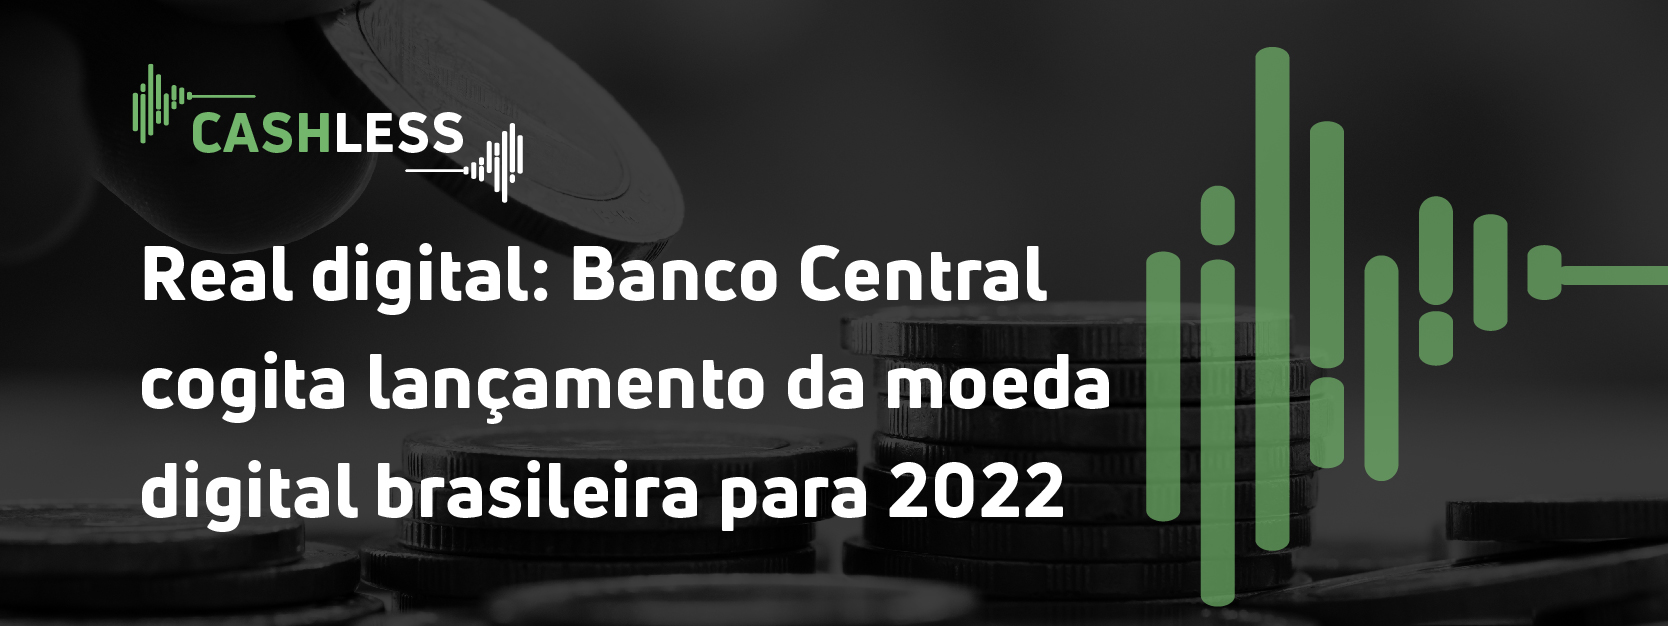 Real digital: Banco Central cogita lançamento da moeda digital brasileira para 2022